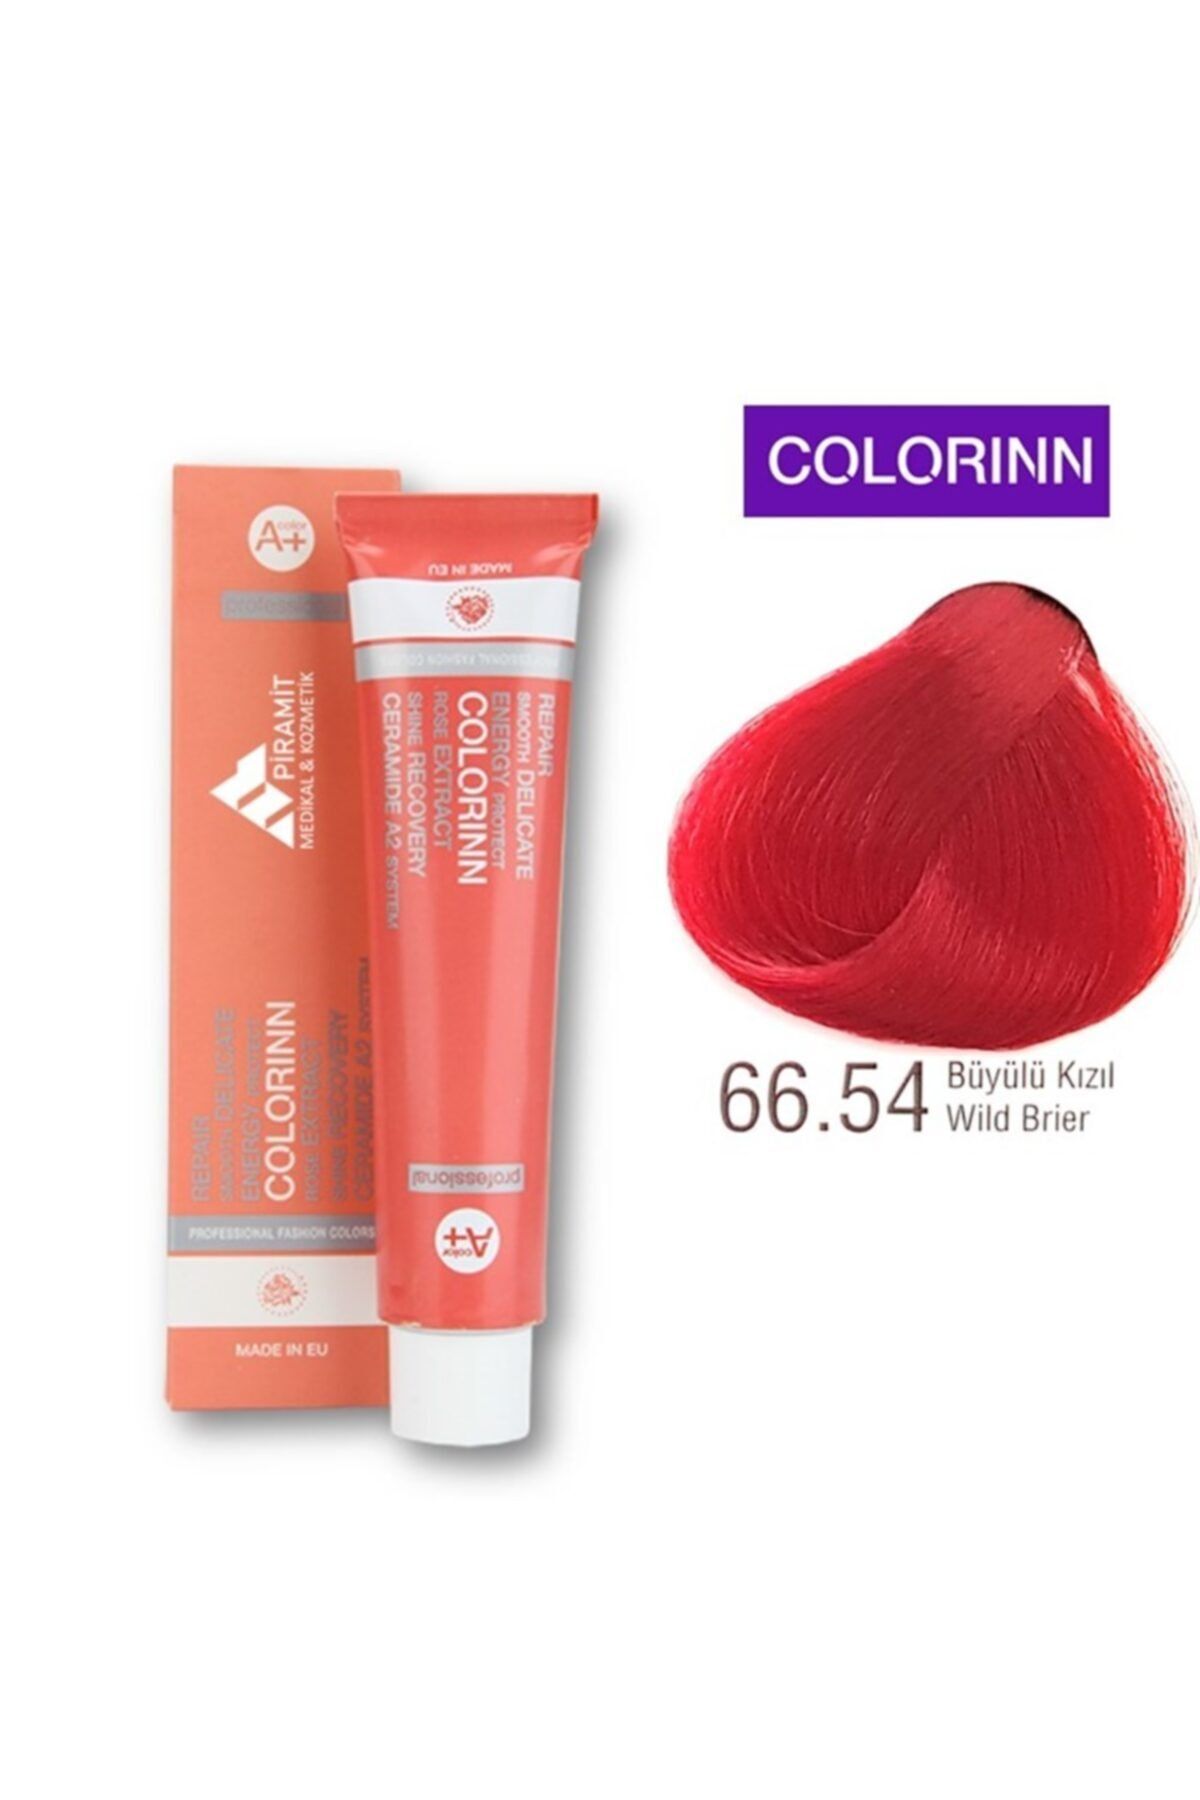 Colorinn Professional Saç Boyası 66.54 Büyülü Kızıl